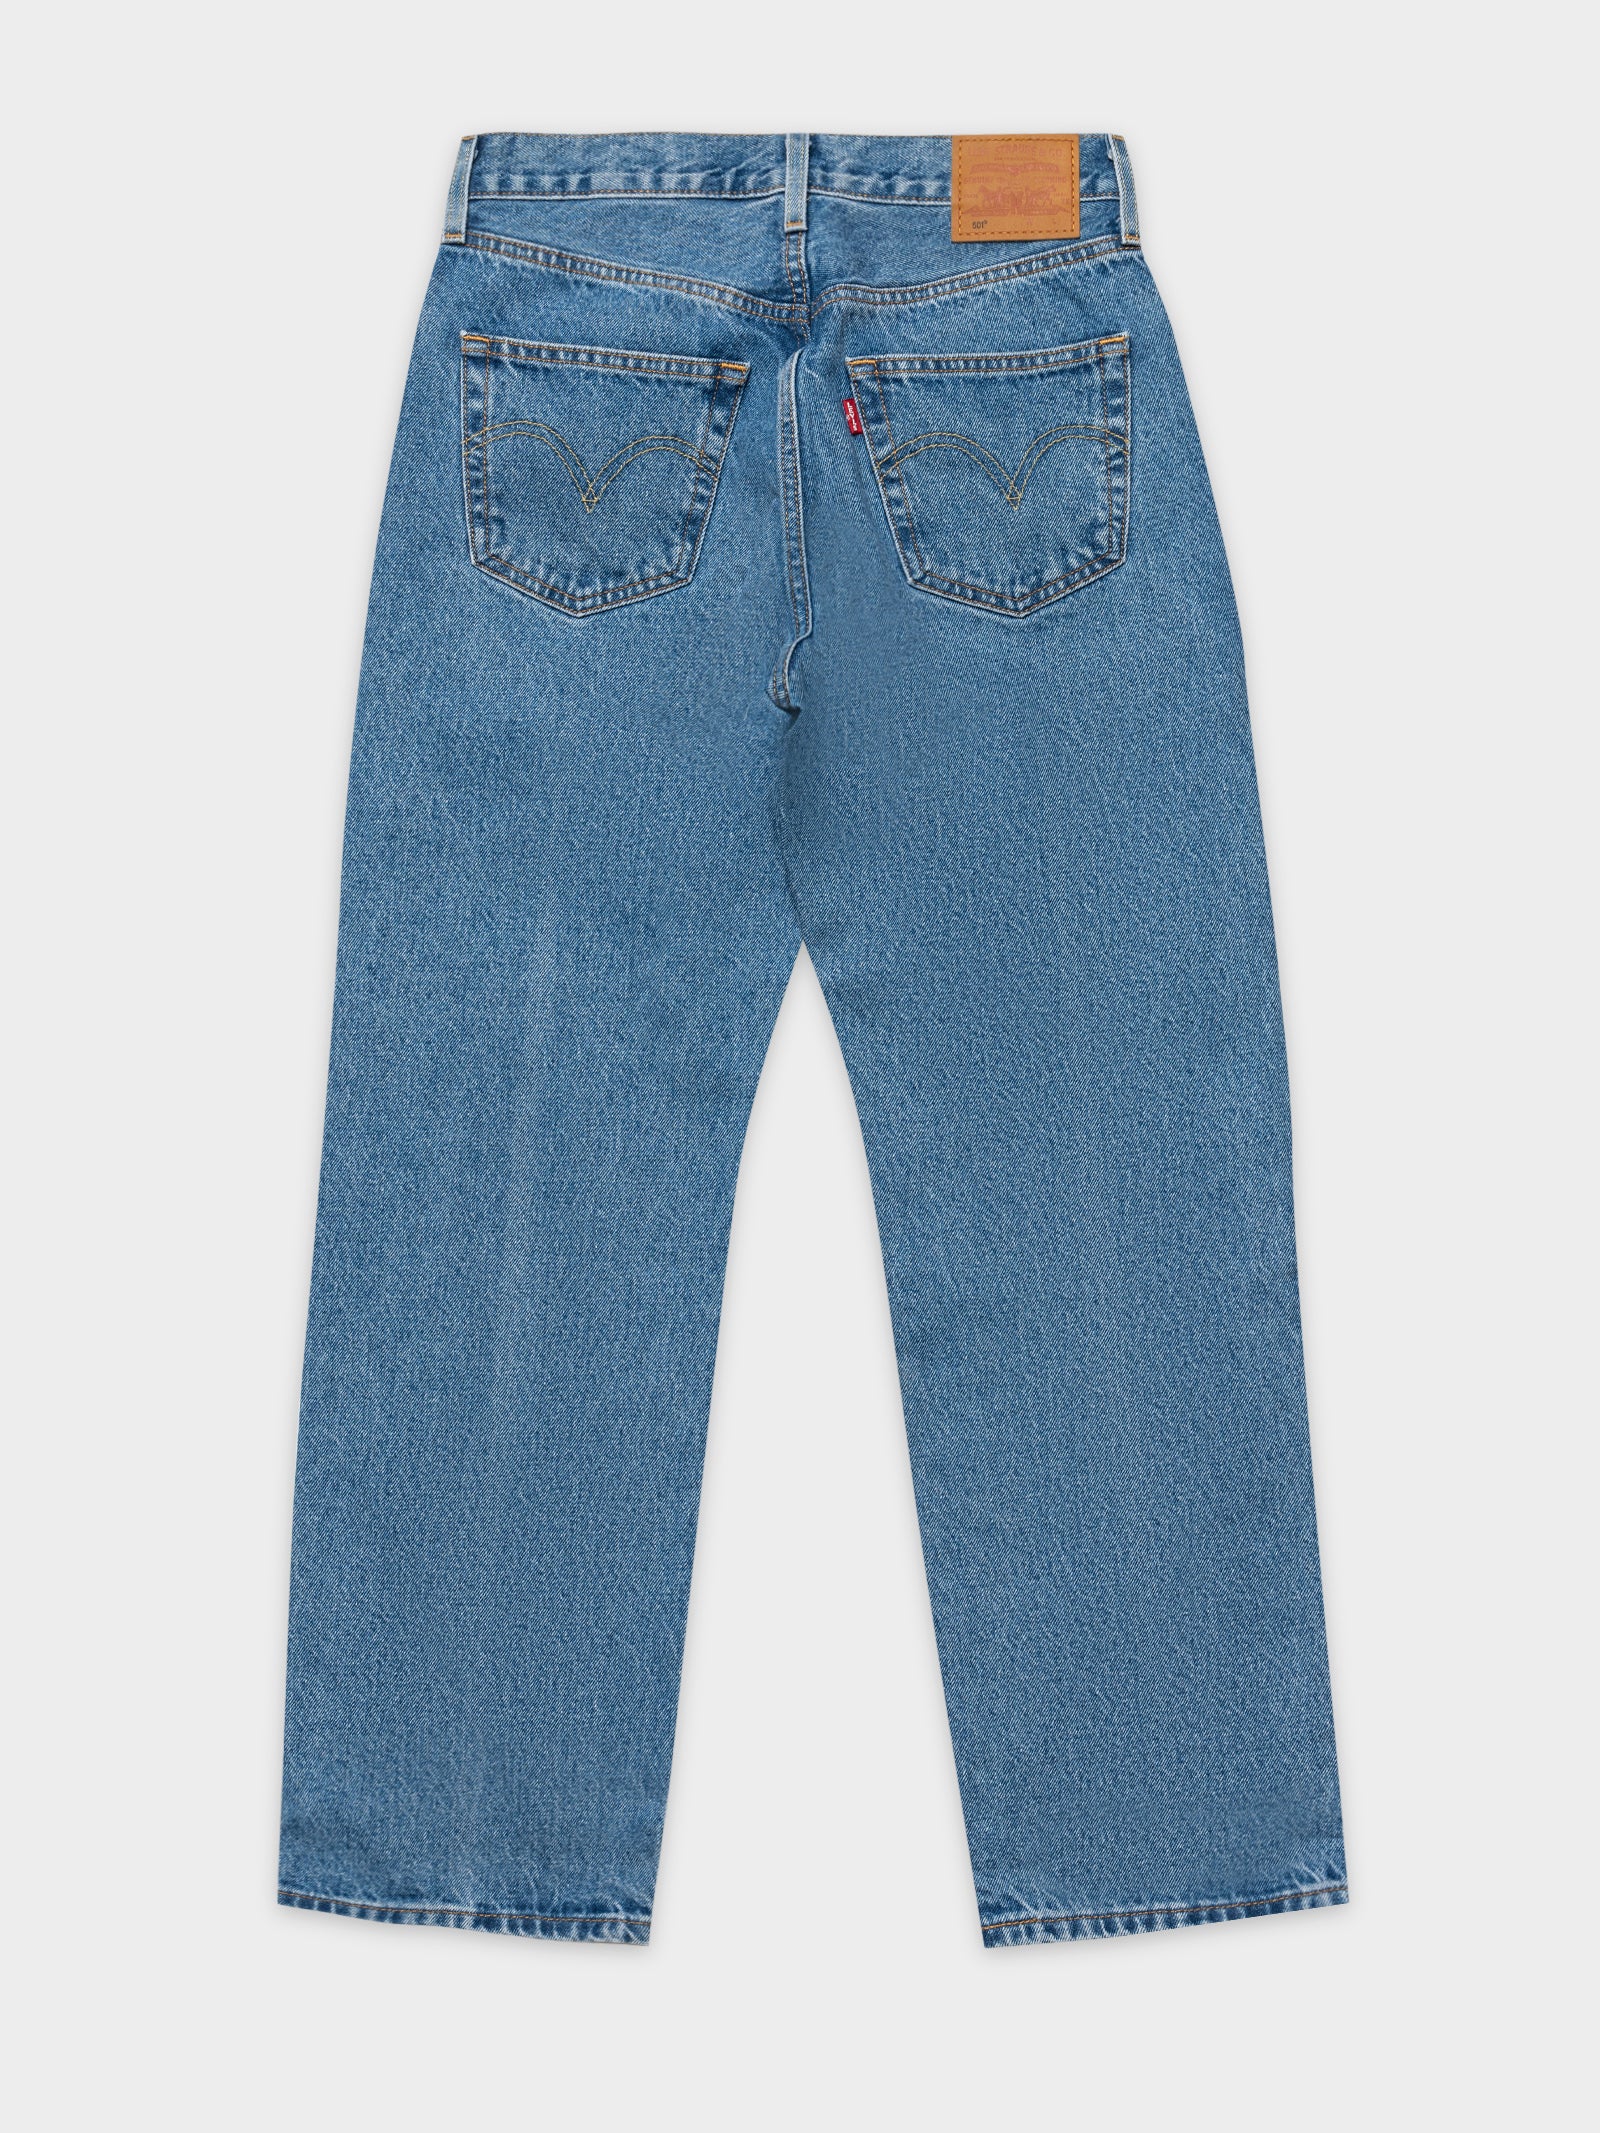 90's 501 Jeans in Drew Me In